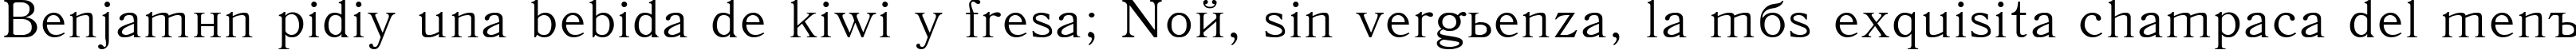 Пример написания шрифтом Antiqua110n текста на испанском